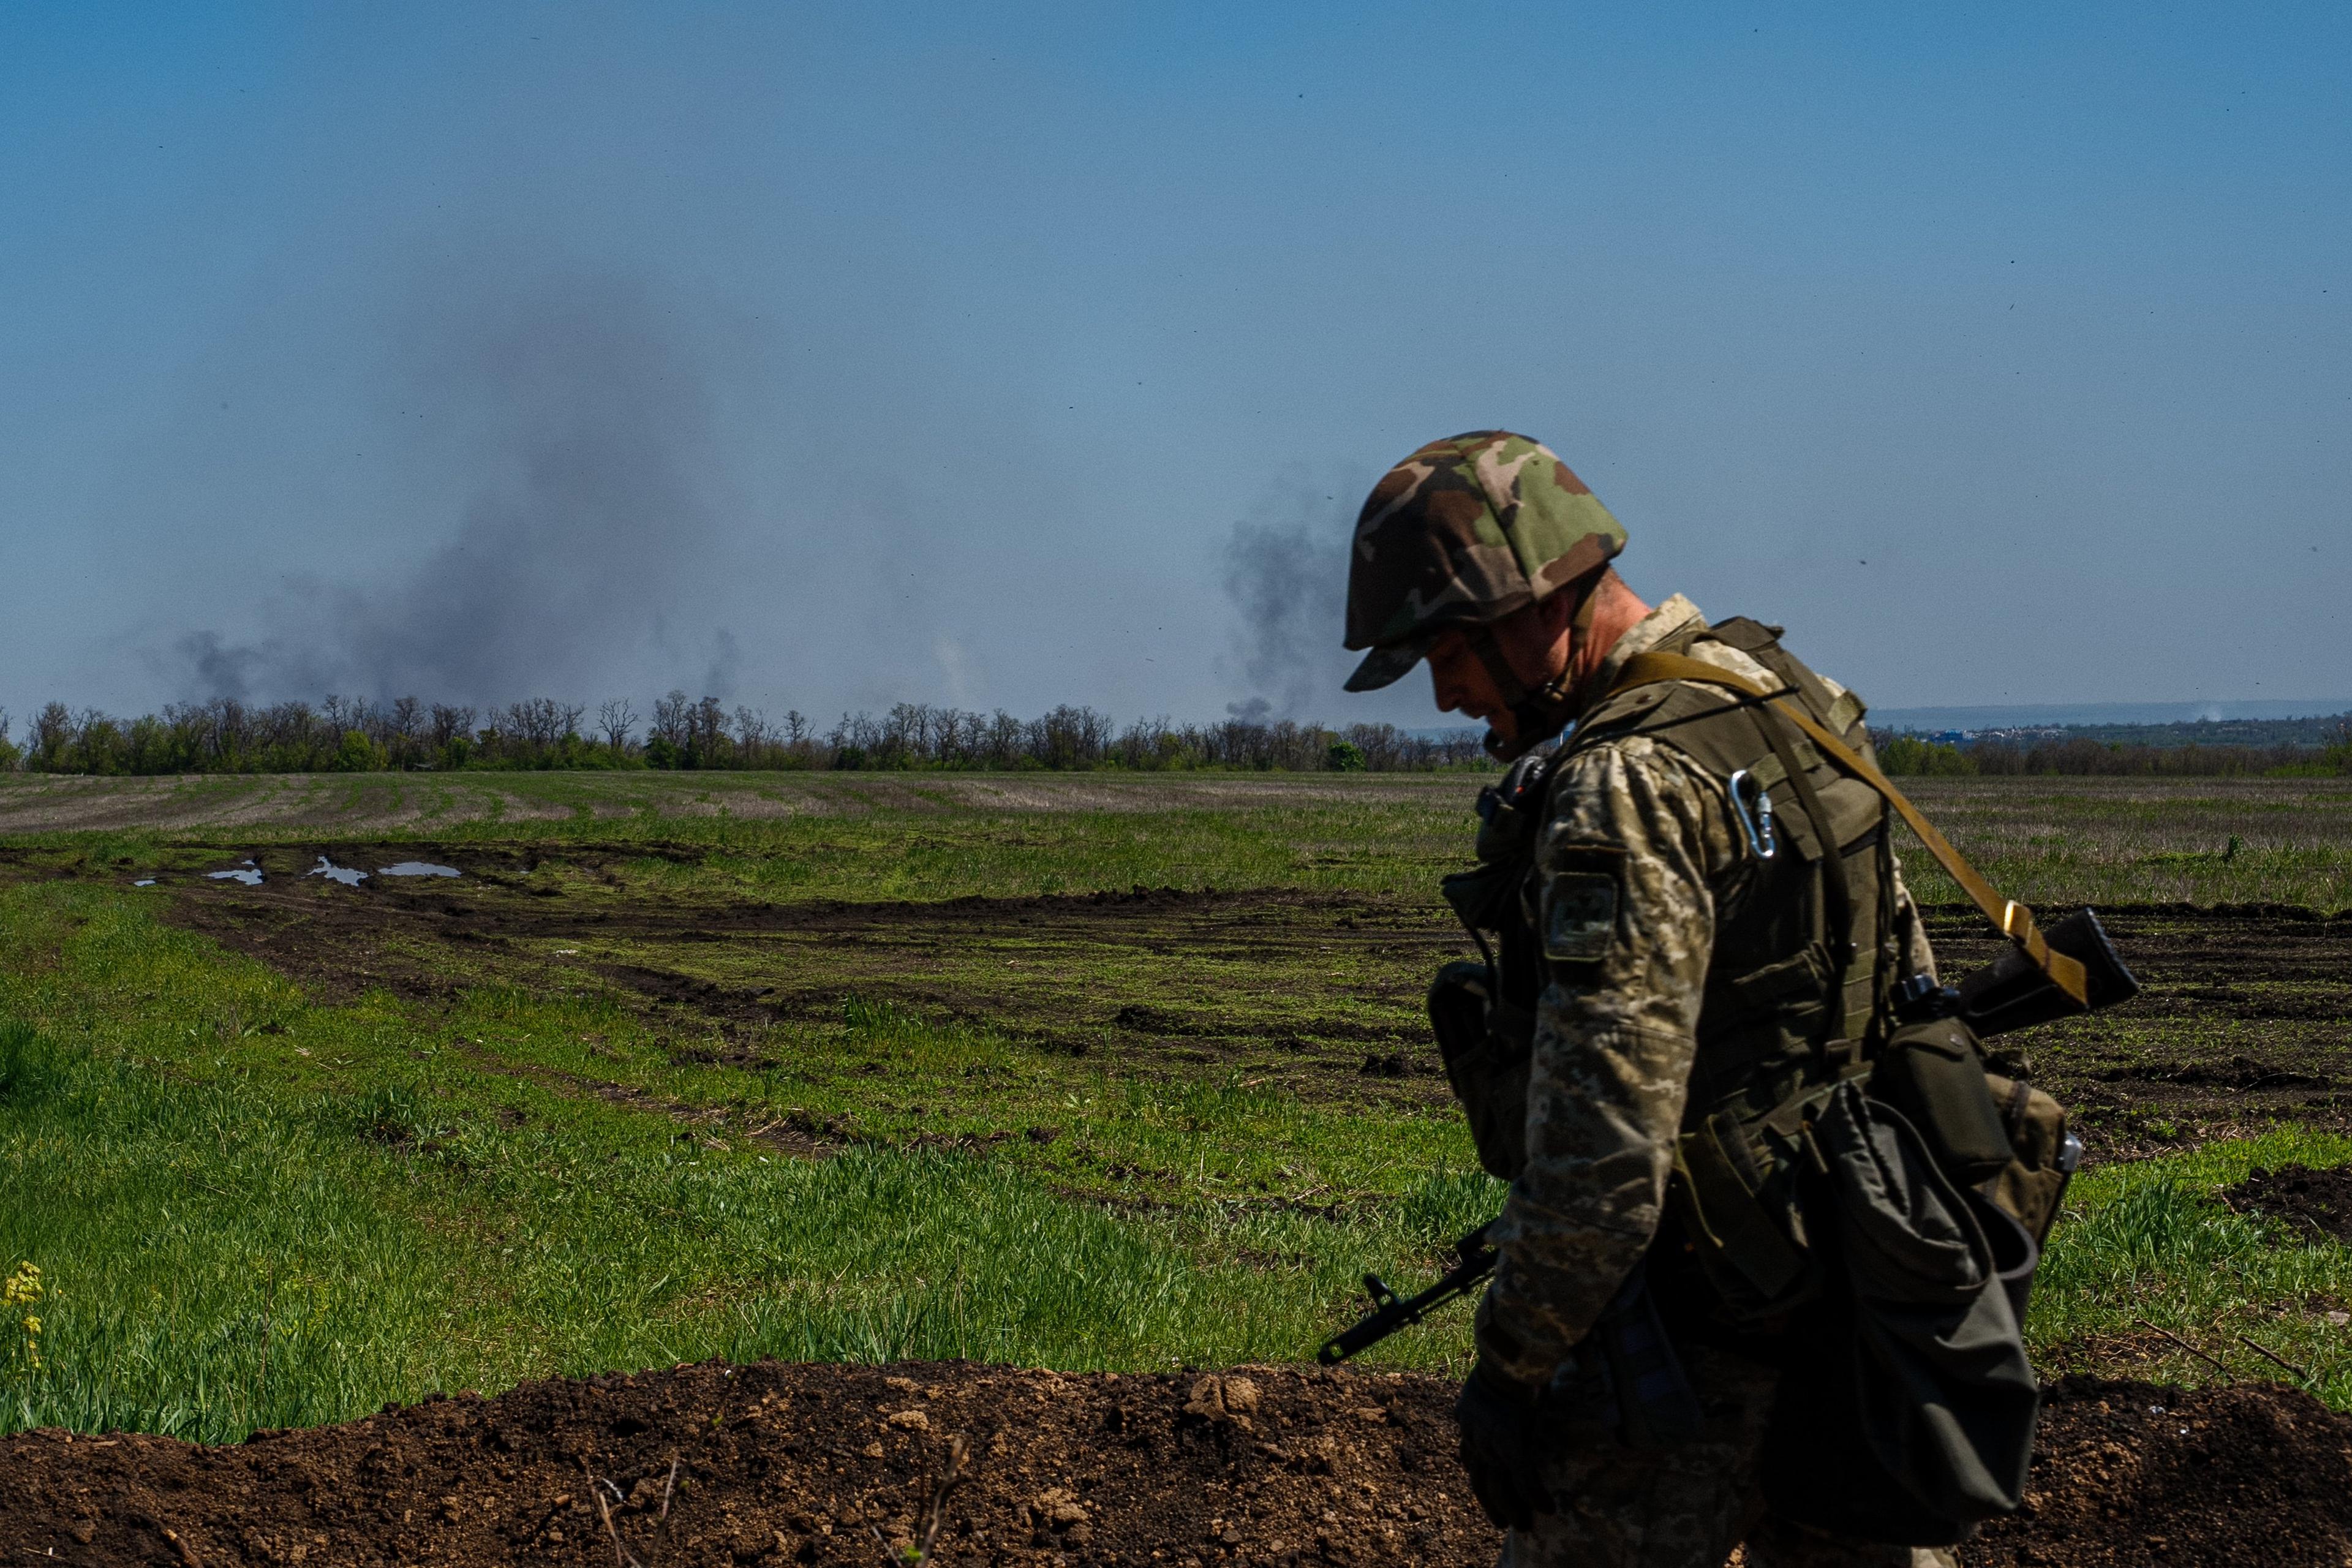 ukraiński żołnierz, w tle zielone pole a dale unoszący sie dym